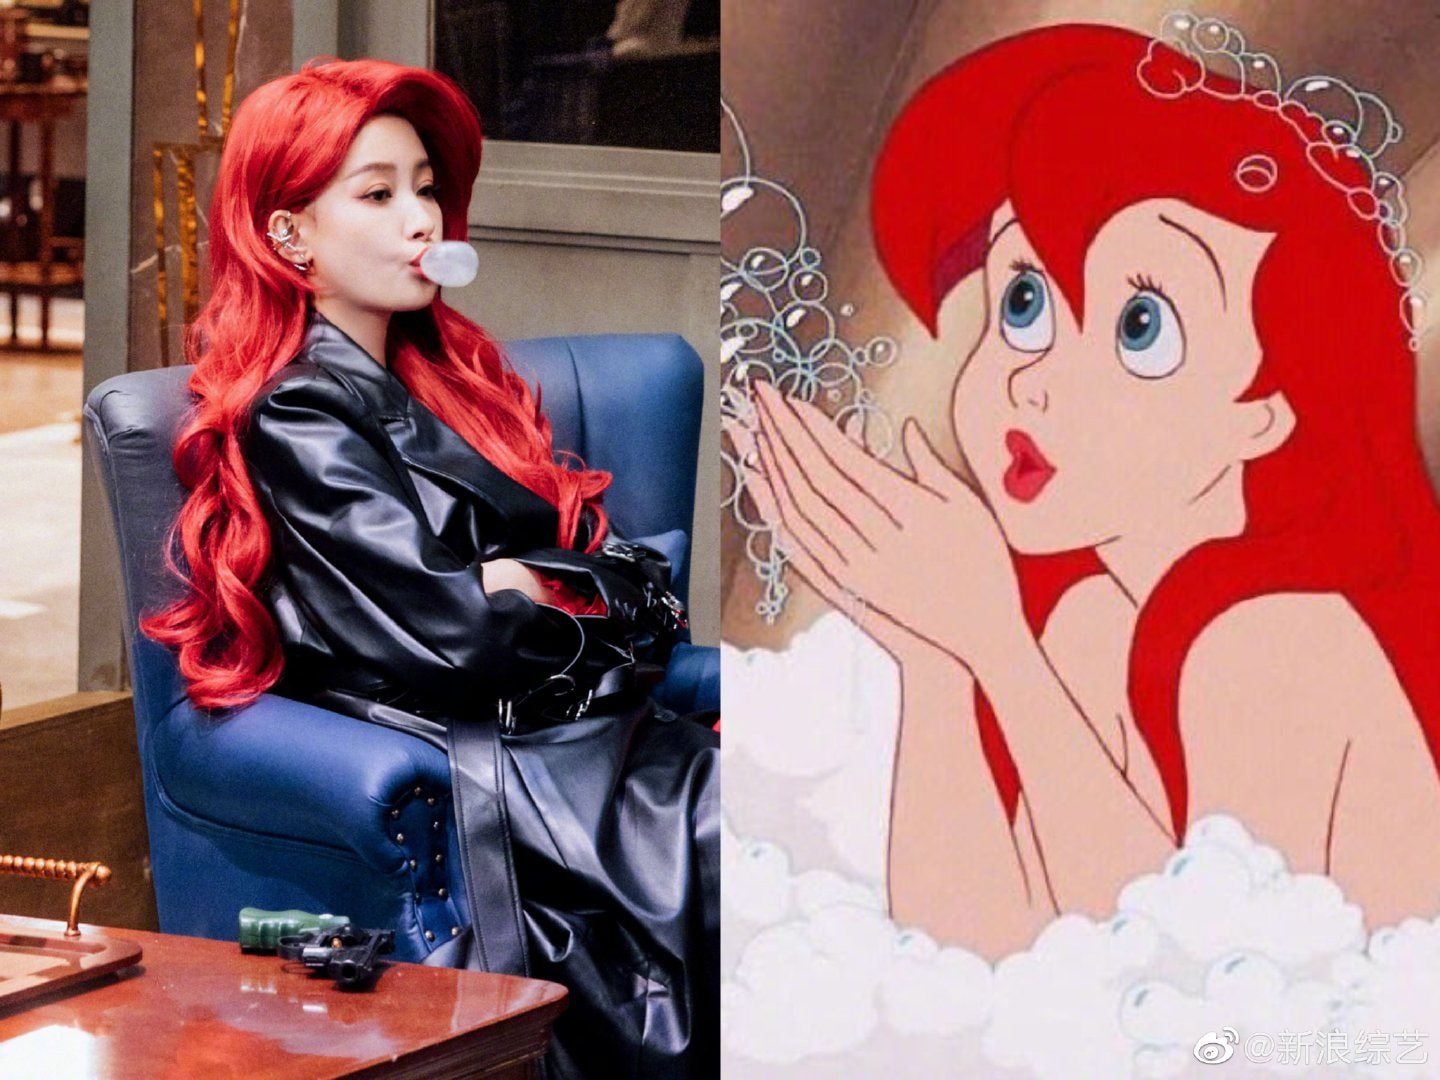 Tôn Di gây bão cộng đồng mạng với mái tóc đỏ rực như nàng công chúa Disney - Ảnh 4